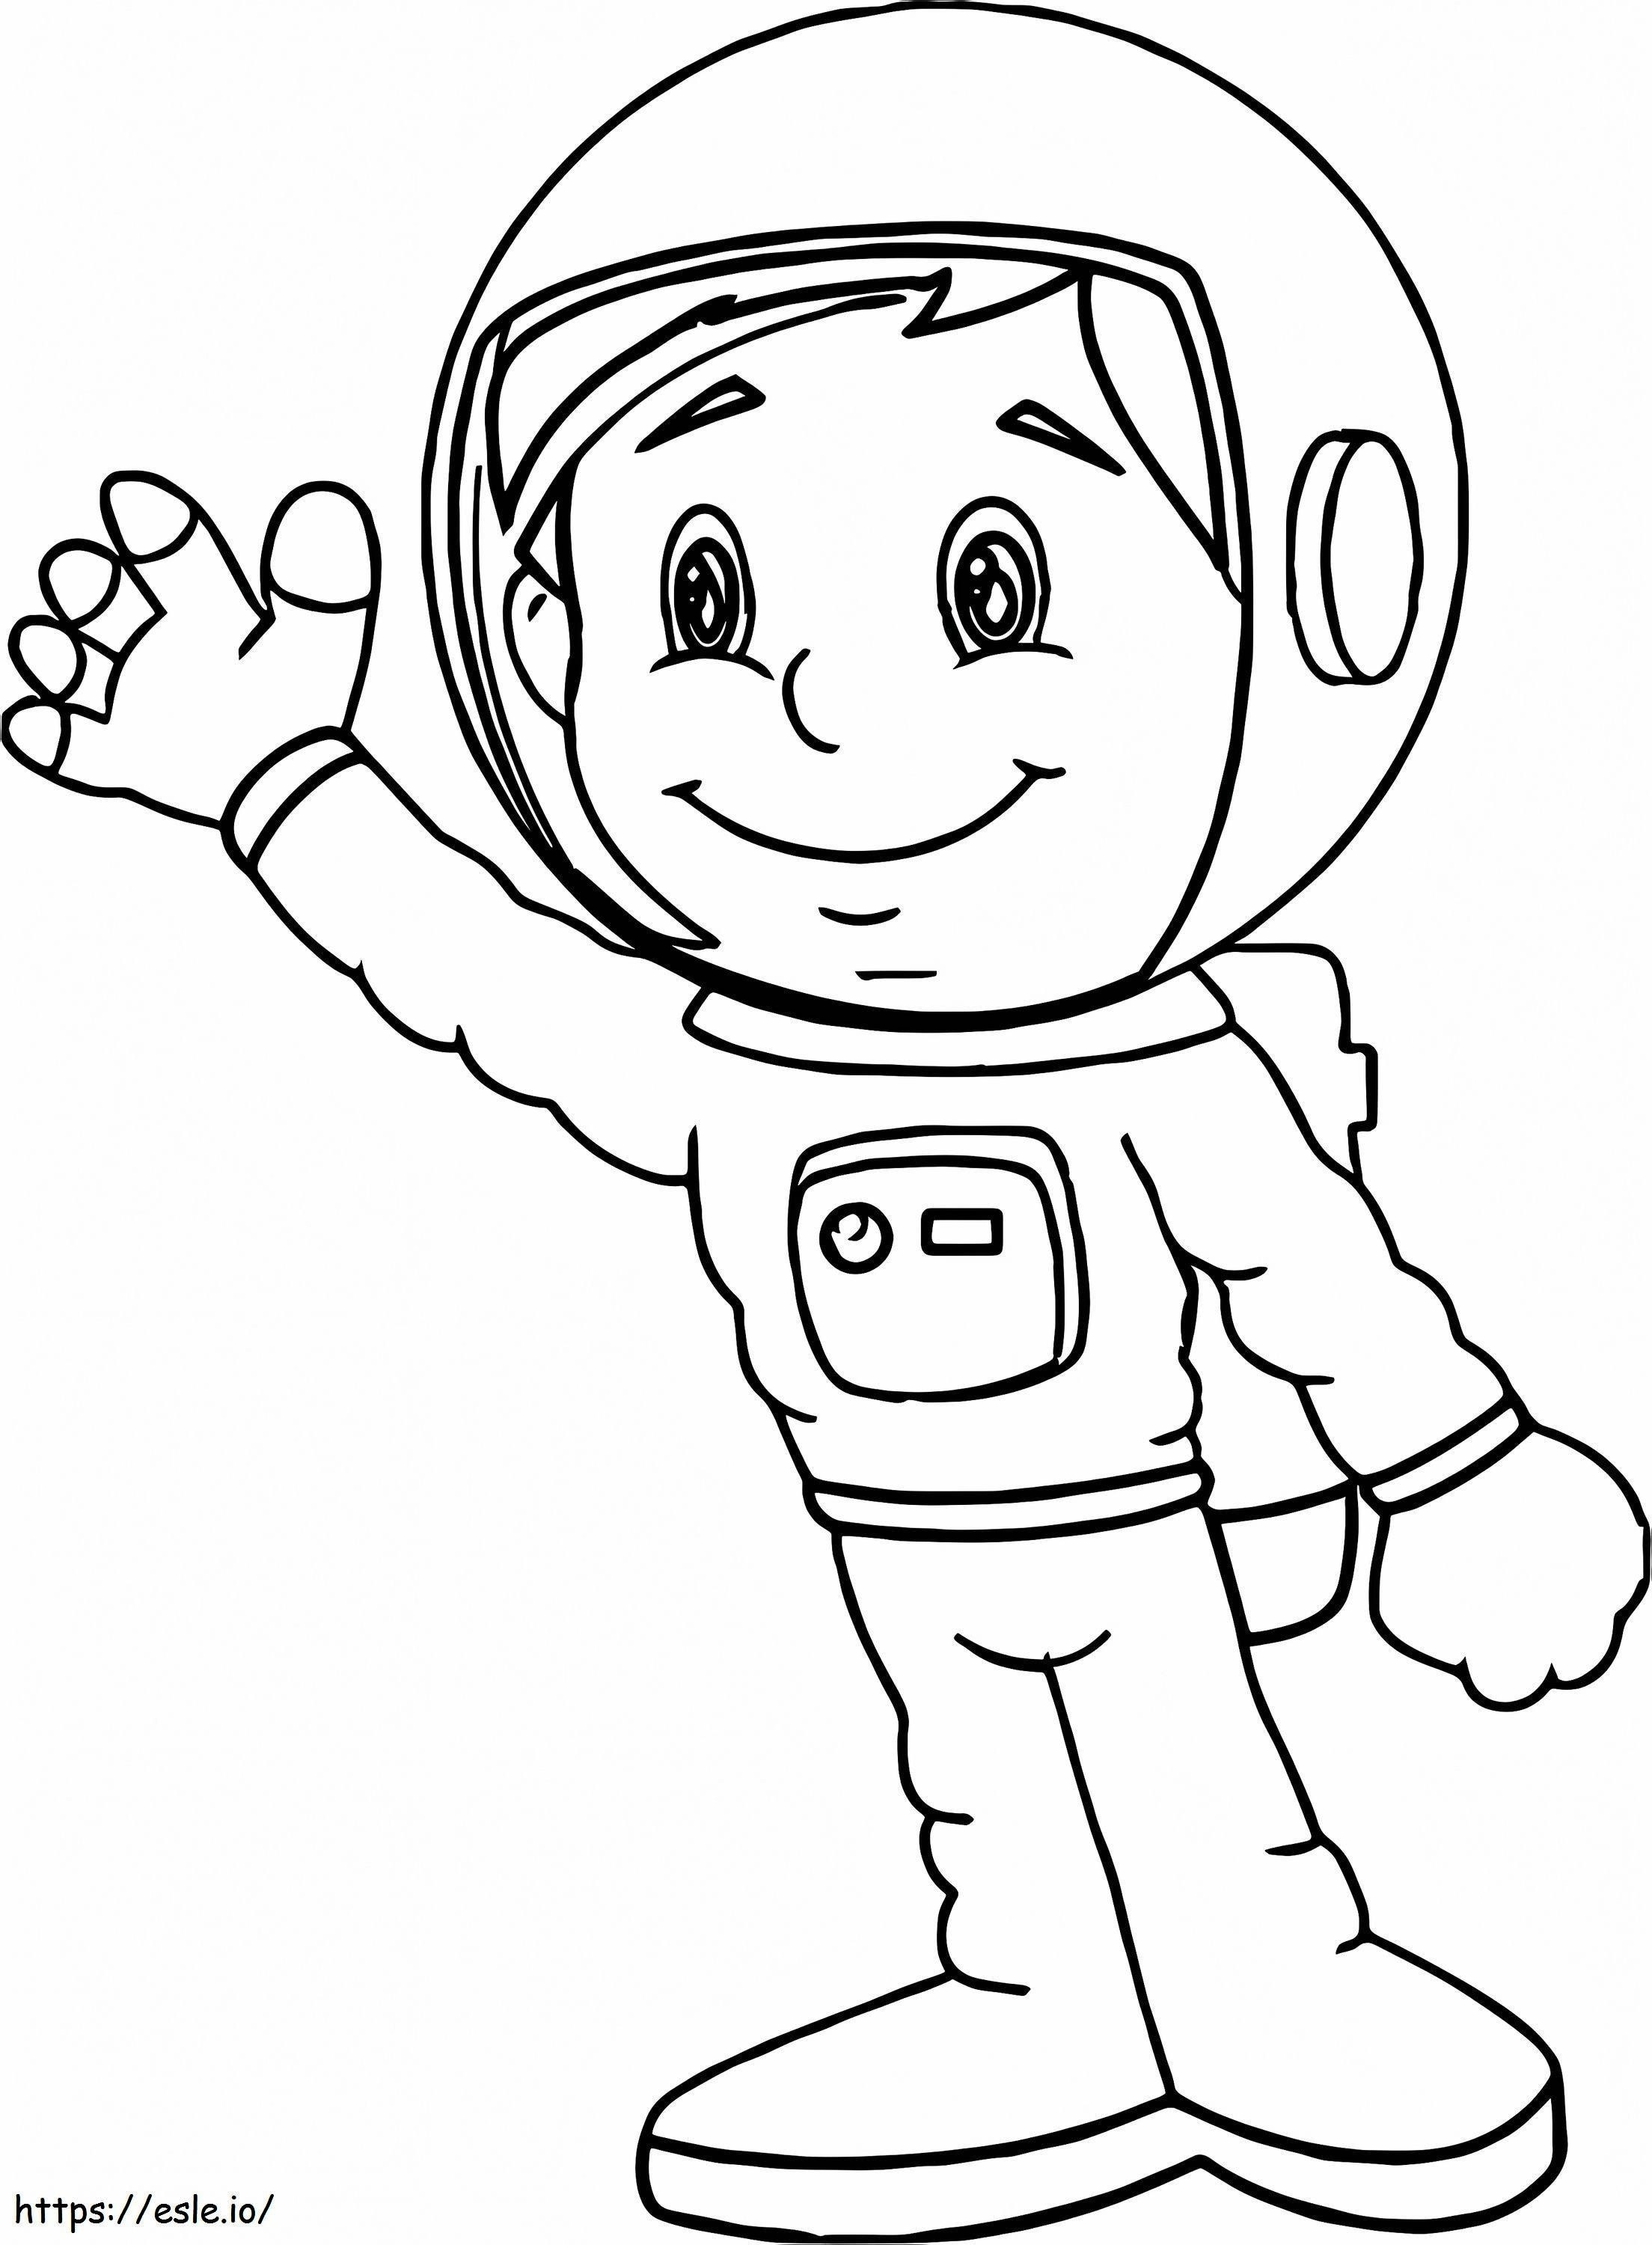 1545723953 Astronaut Gratis kleurplaten Astronaut printen kleurplaat kleurplaat